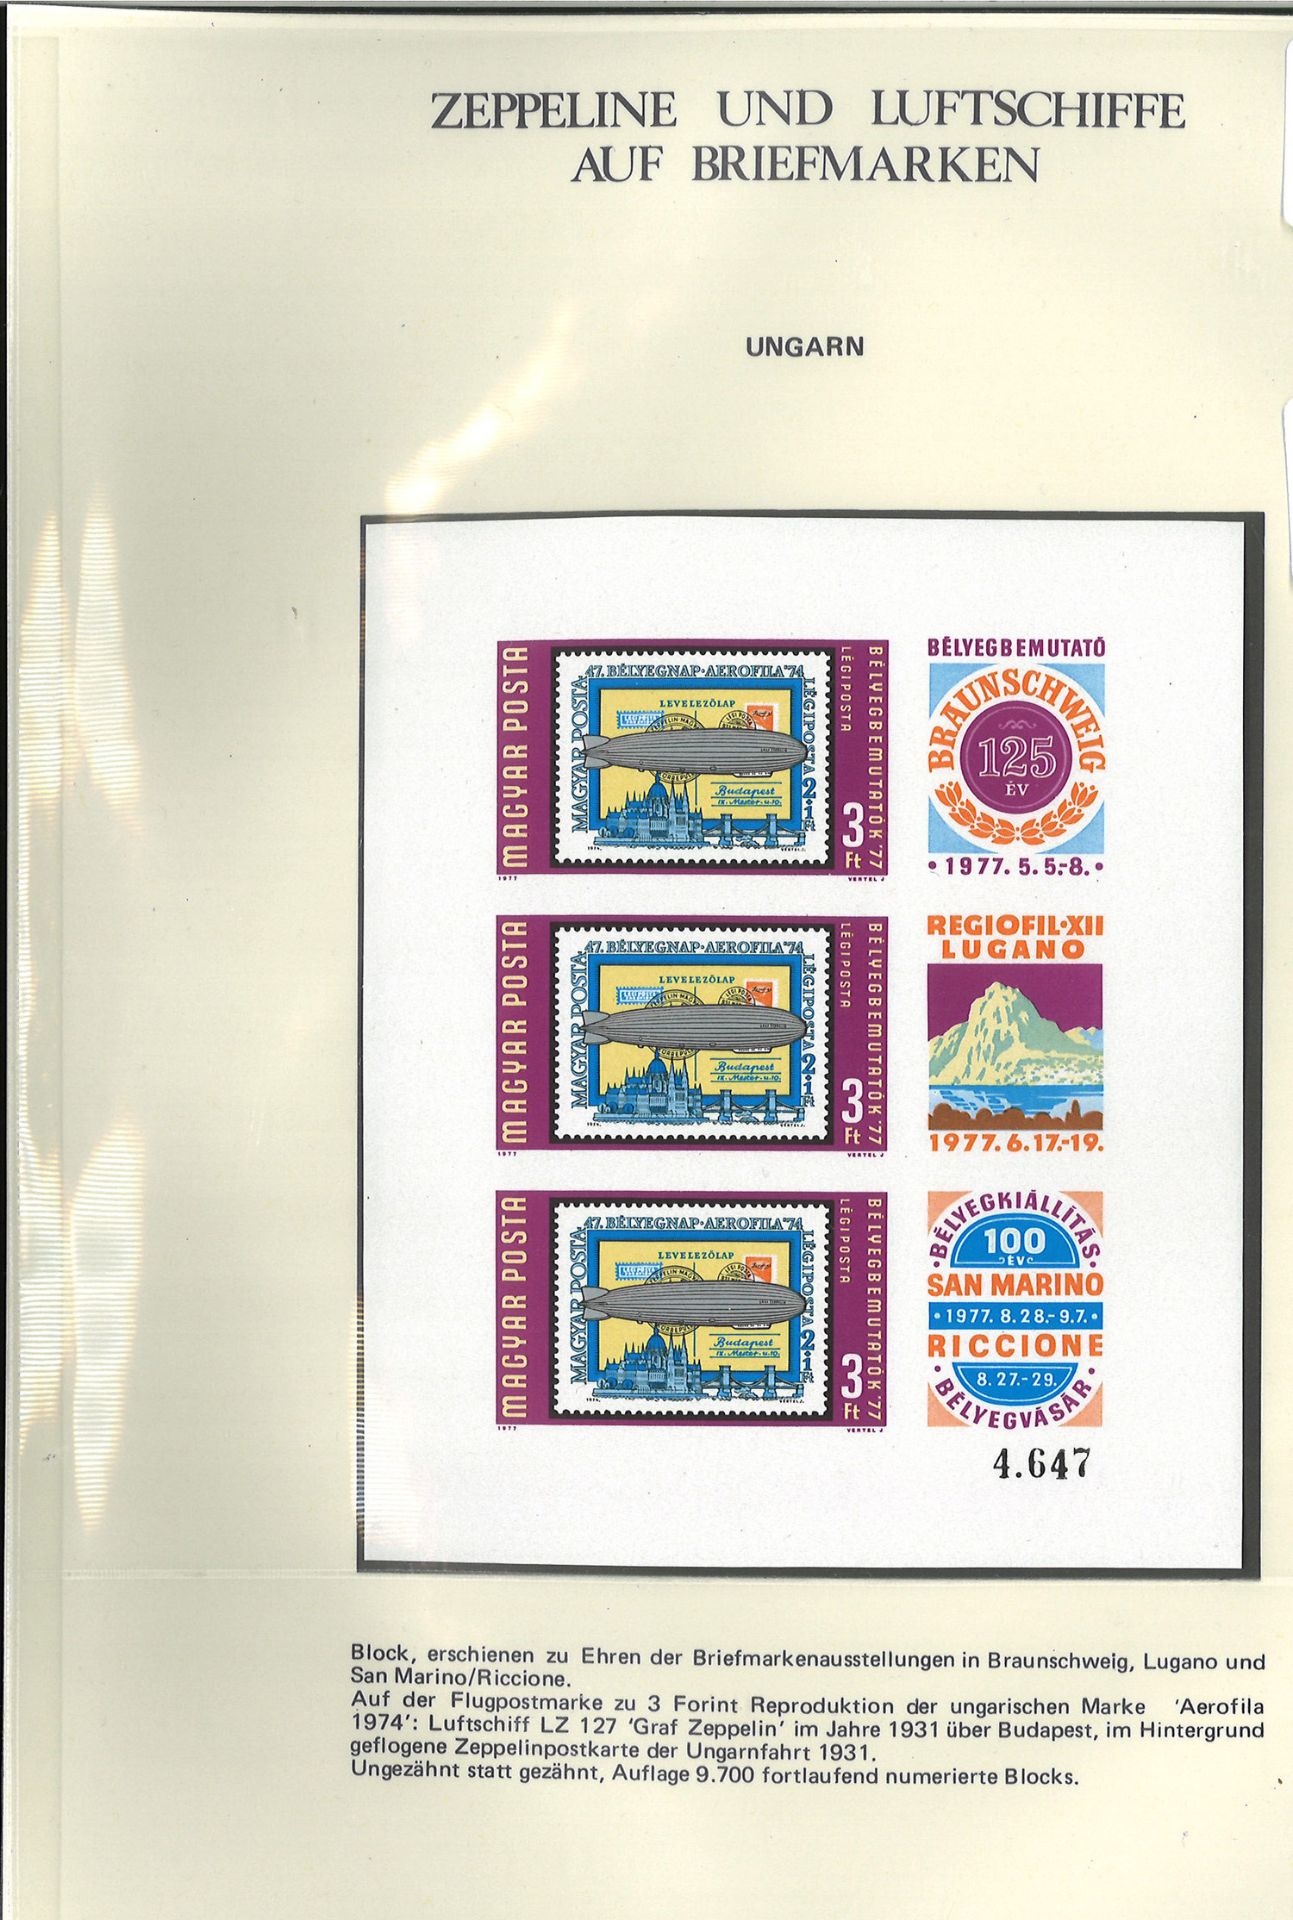 Ungarn, Zeppelin Kleinbogen, Block 3201, Auflage 9700.